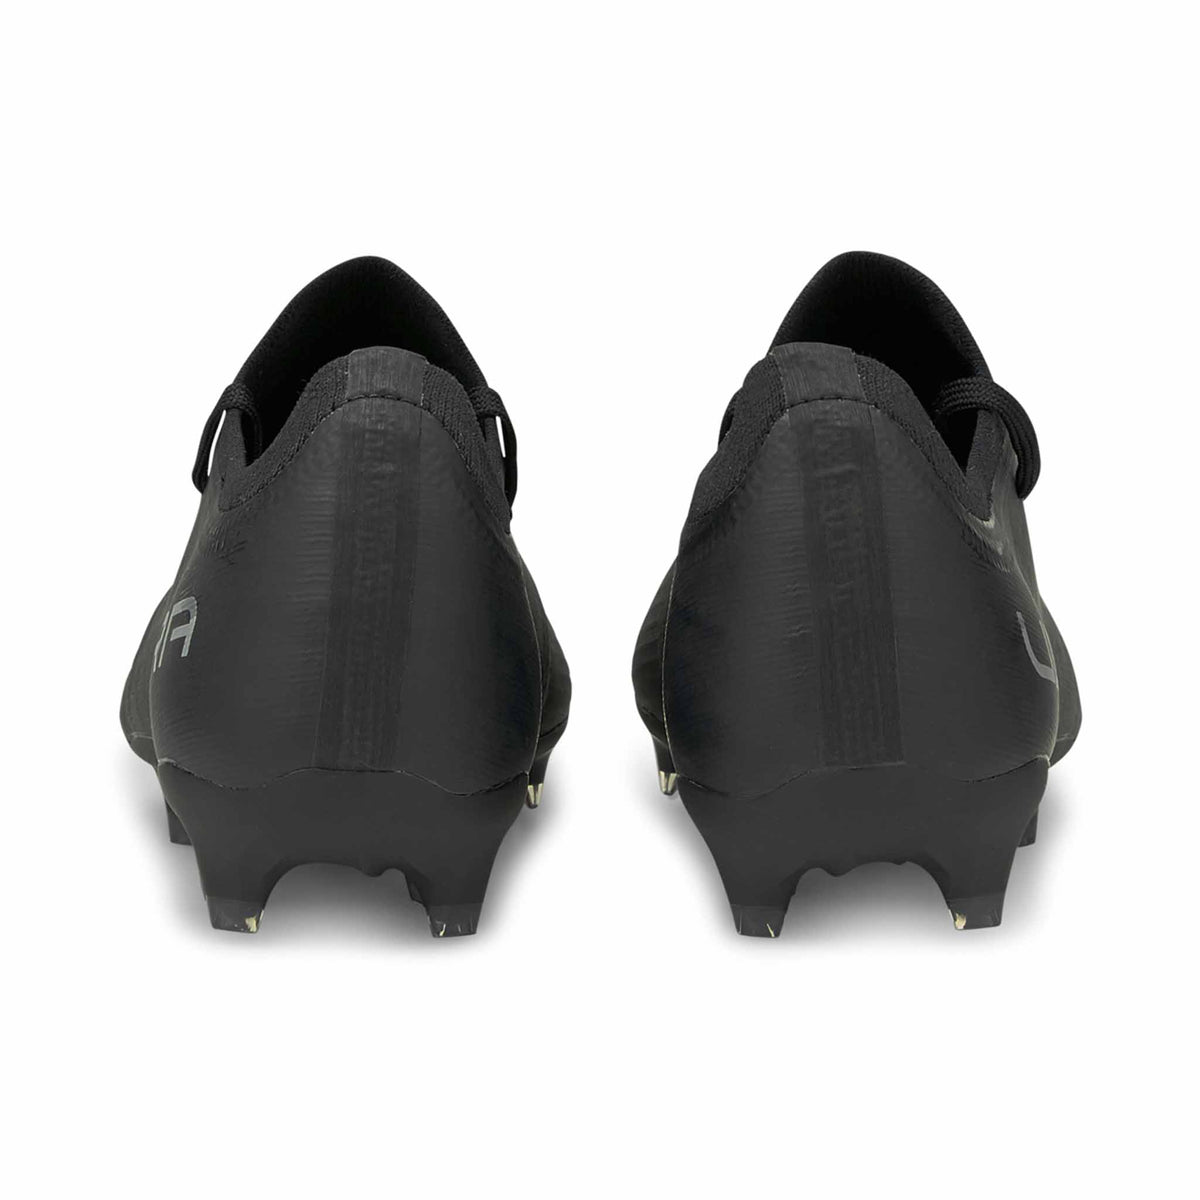 Puma Ultra 3.3 FG/AG chaussures de soccer pour adulte - Puma Black / Silver Asphalt Talon